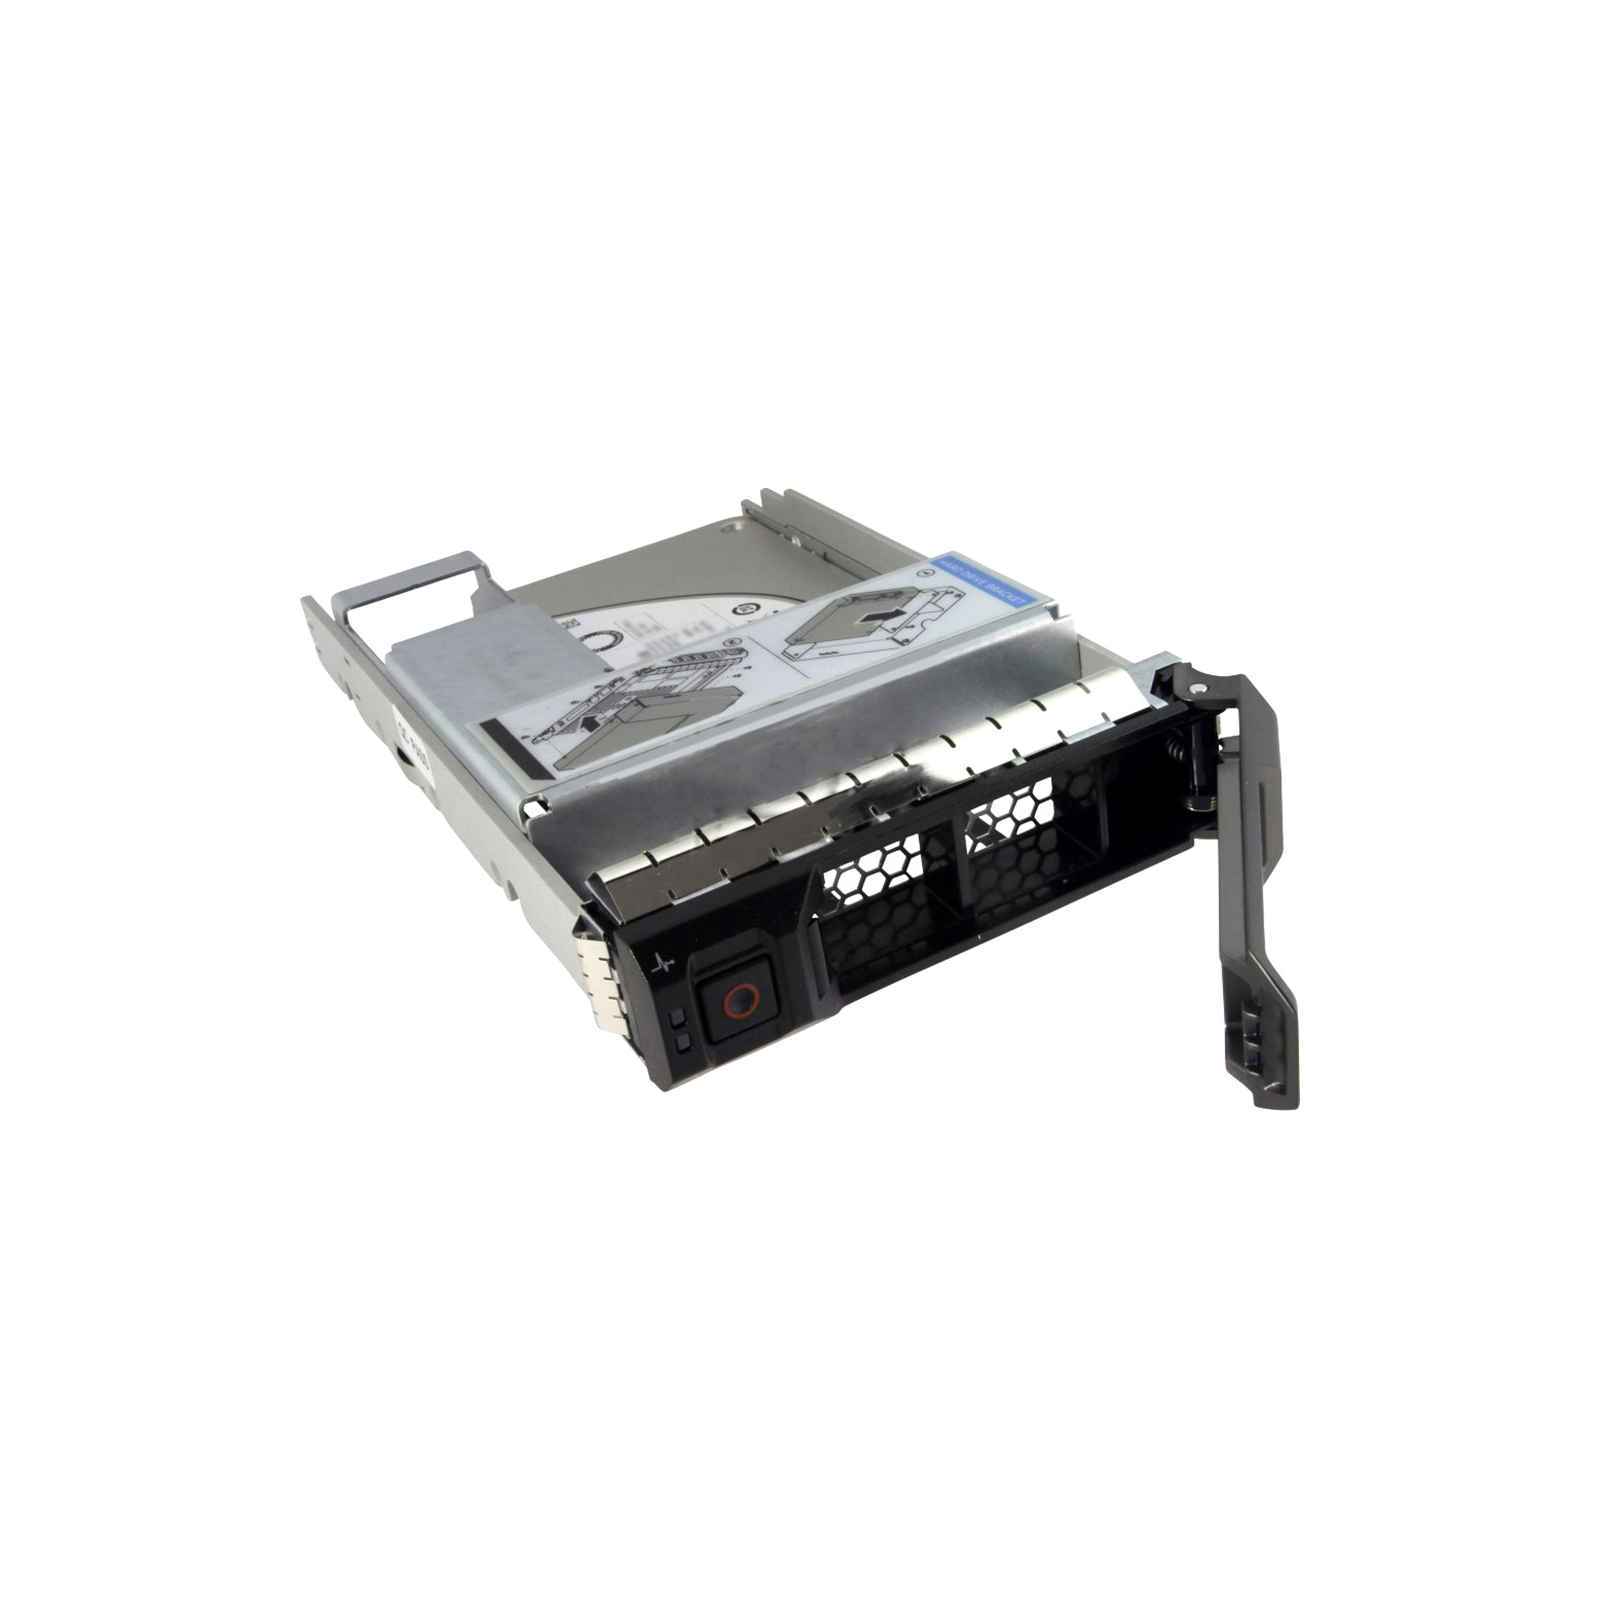 Накопитель SSD для сервера Dell 960GB SSD SATA 6G 512e 2.5'' with 3.5in HYB CARR, PM883 (400-AXSE)